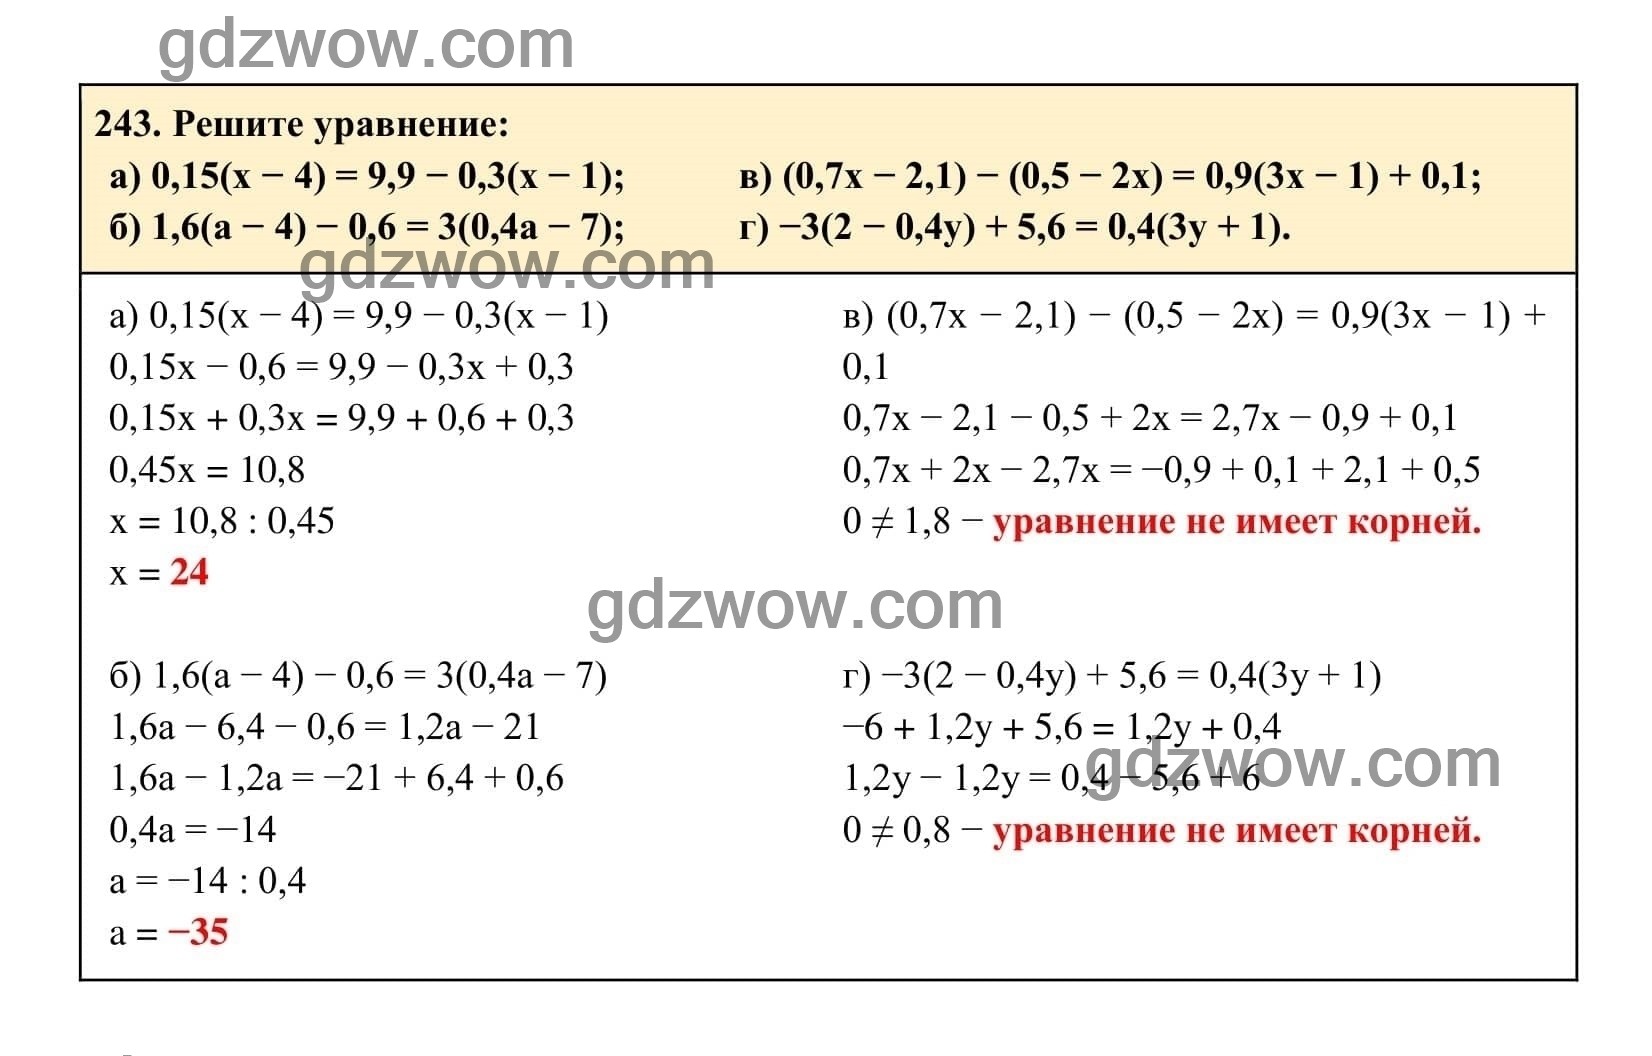 Упражнение 243 - ГДЗ по Алгебре 7 класс Учебник Макарычев (решебник) - GDZwow